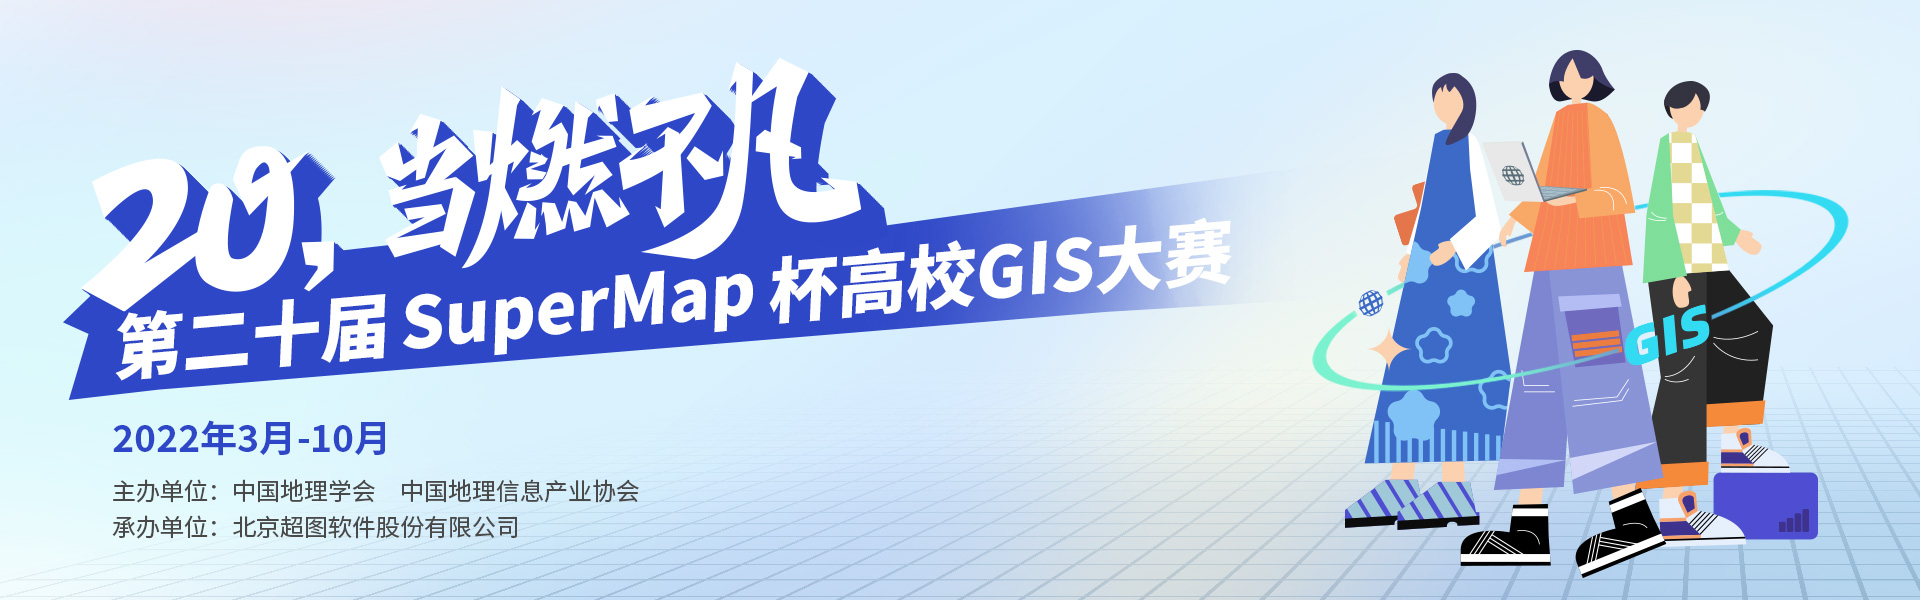 2020年第十九届SuperMap杯高校GIS大赛